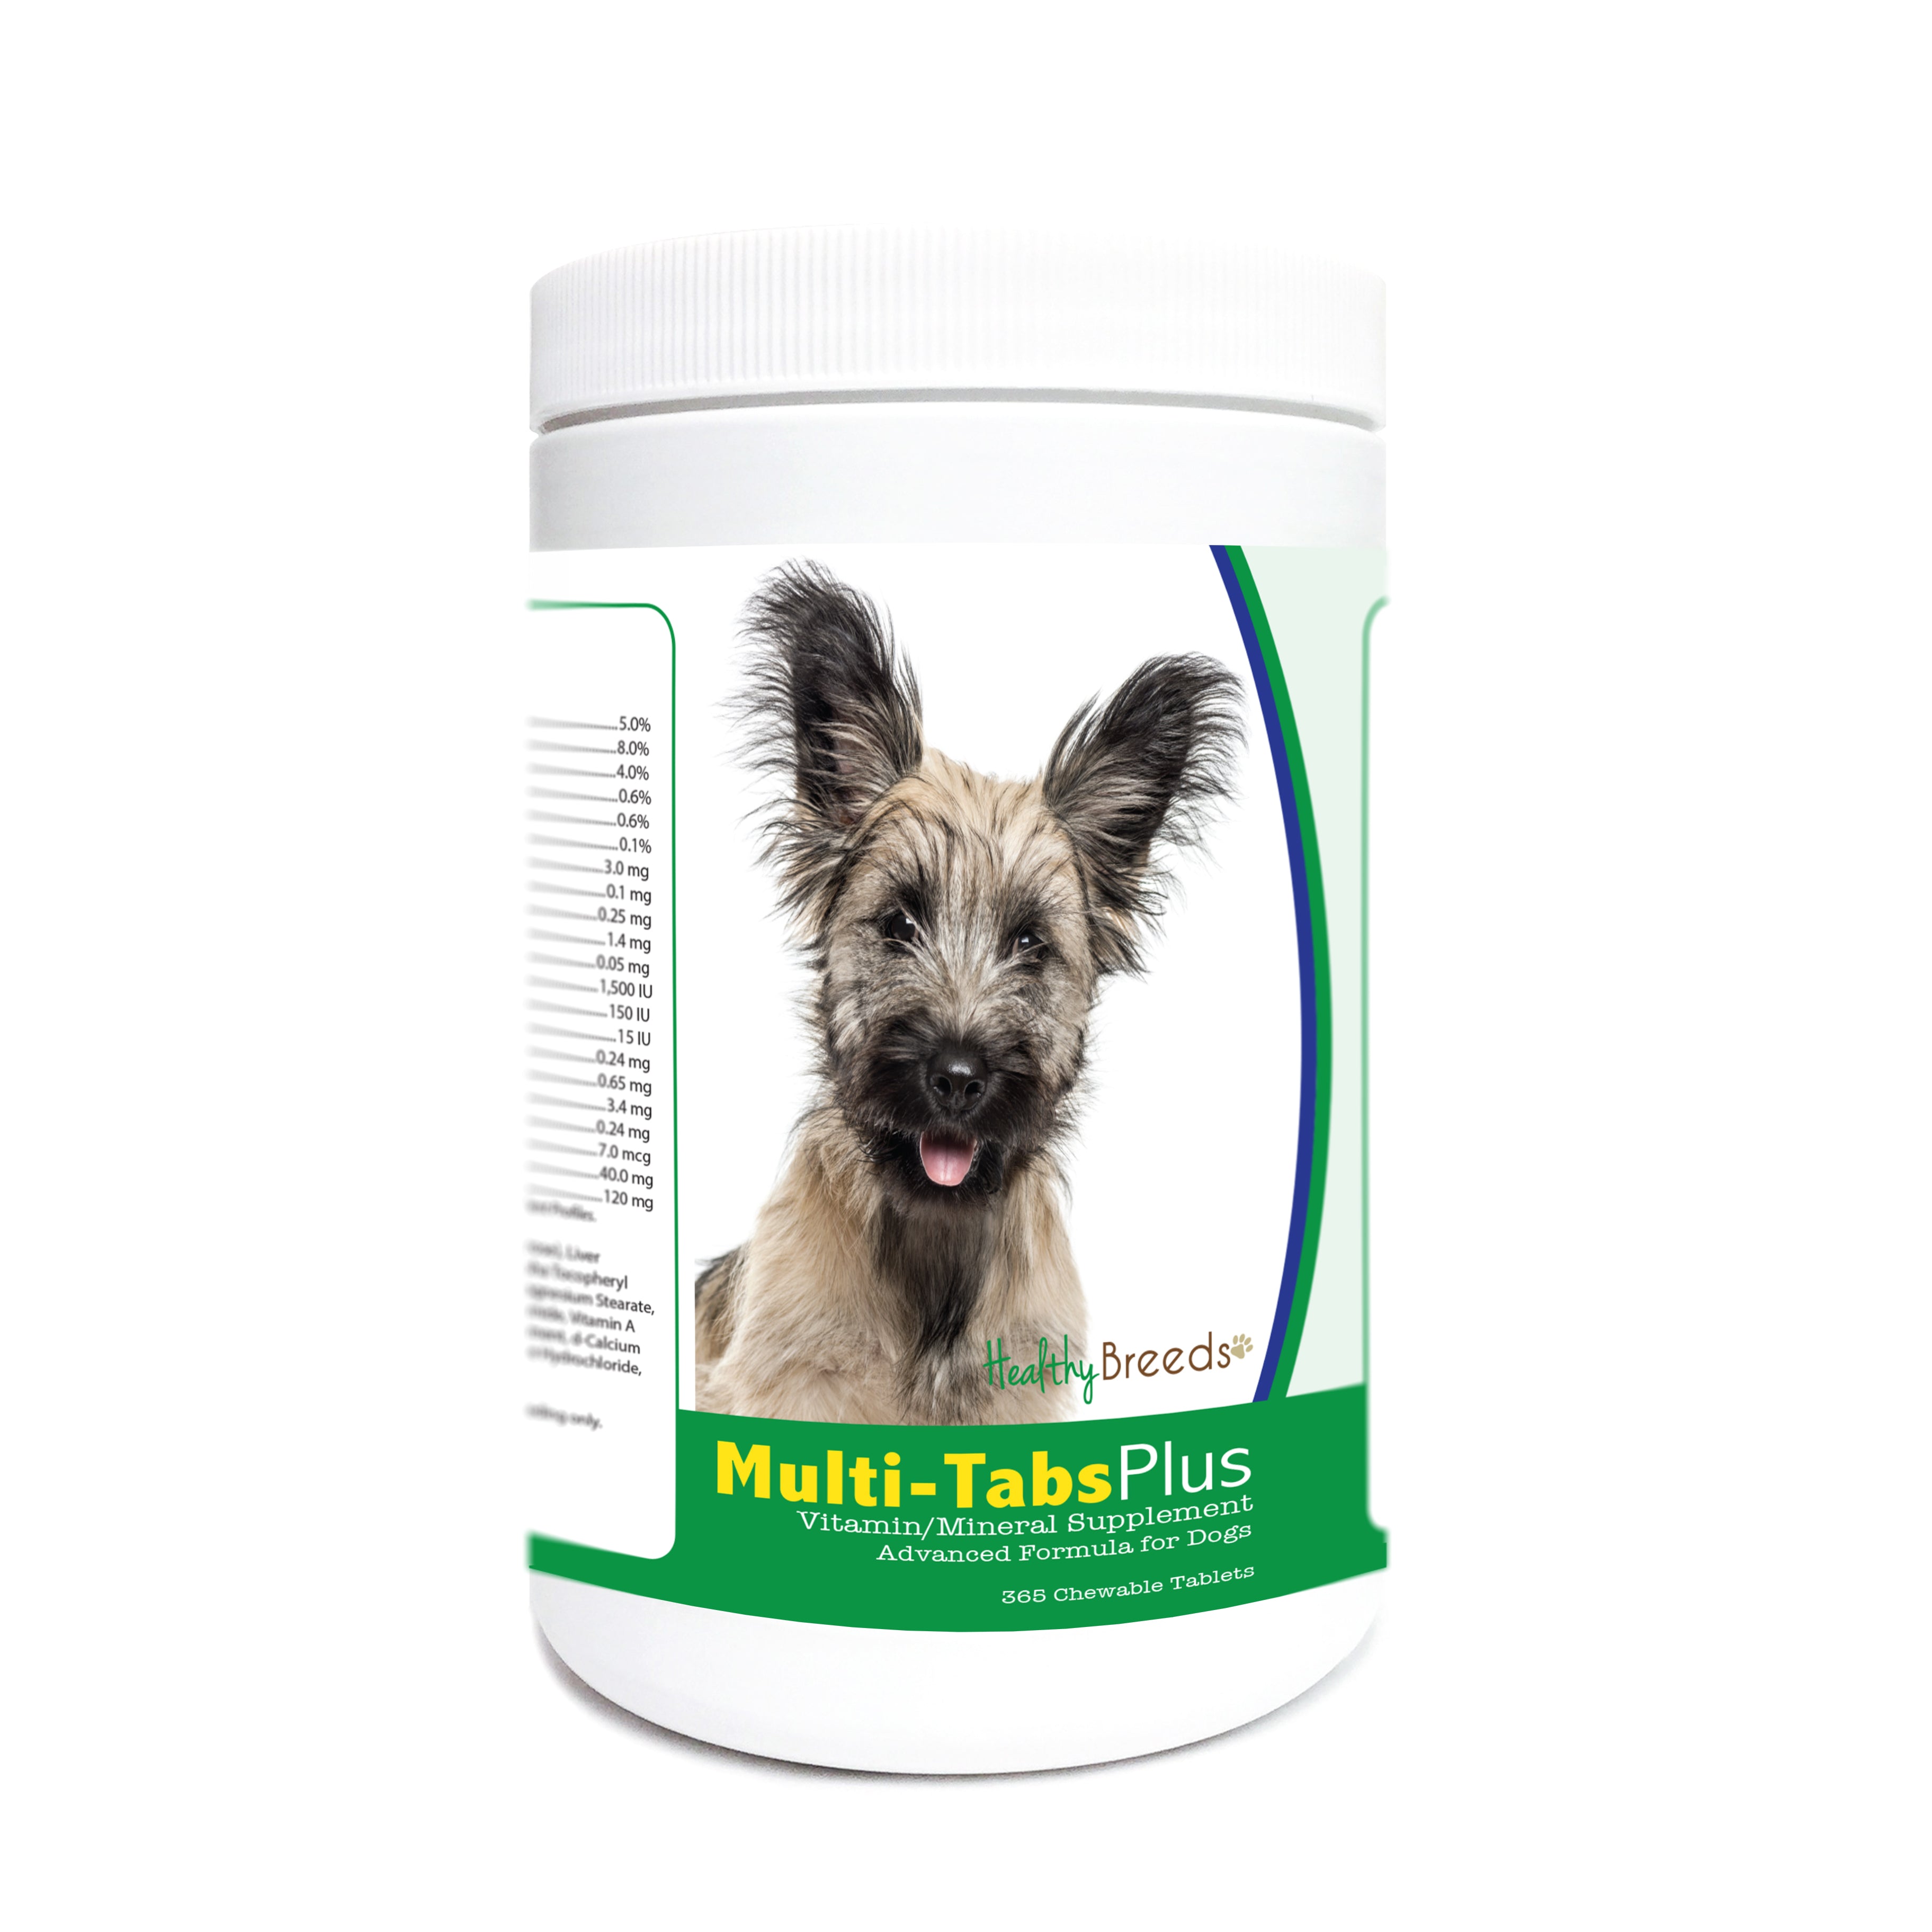 Skye Terrier Multi-Tabs Plus Chewable Tablets 365 Count